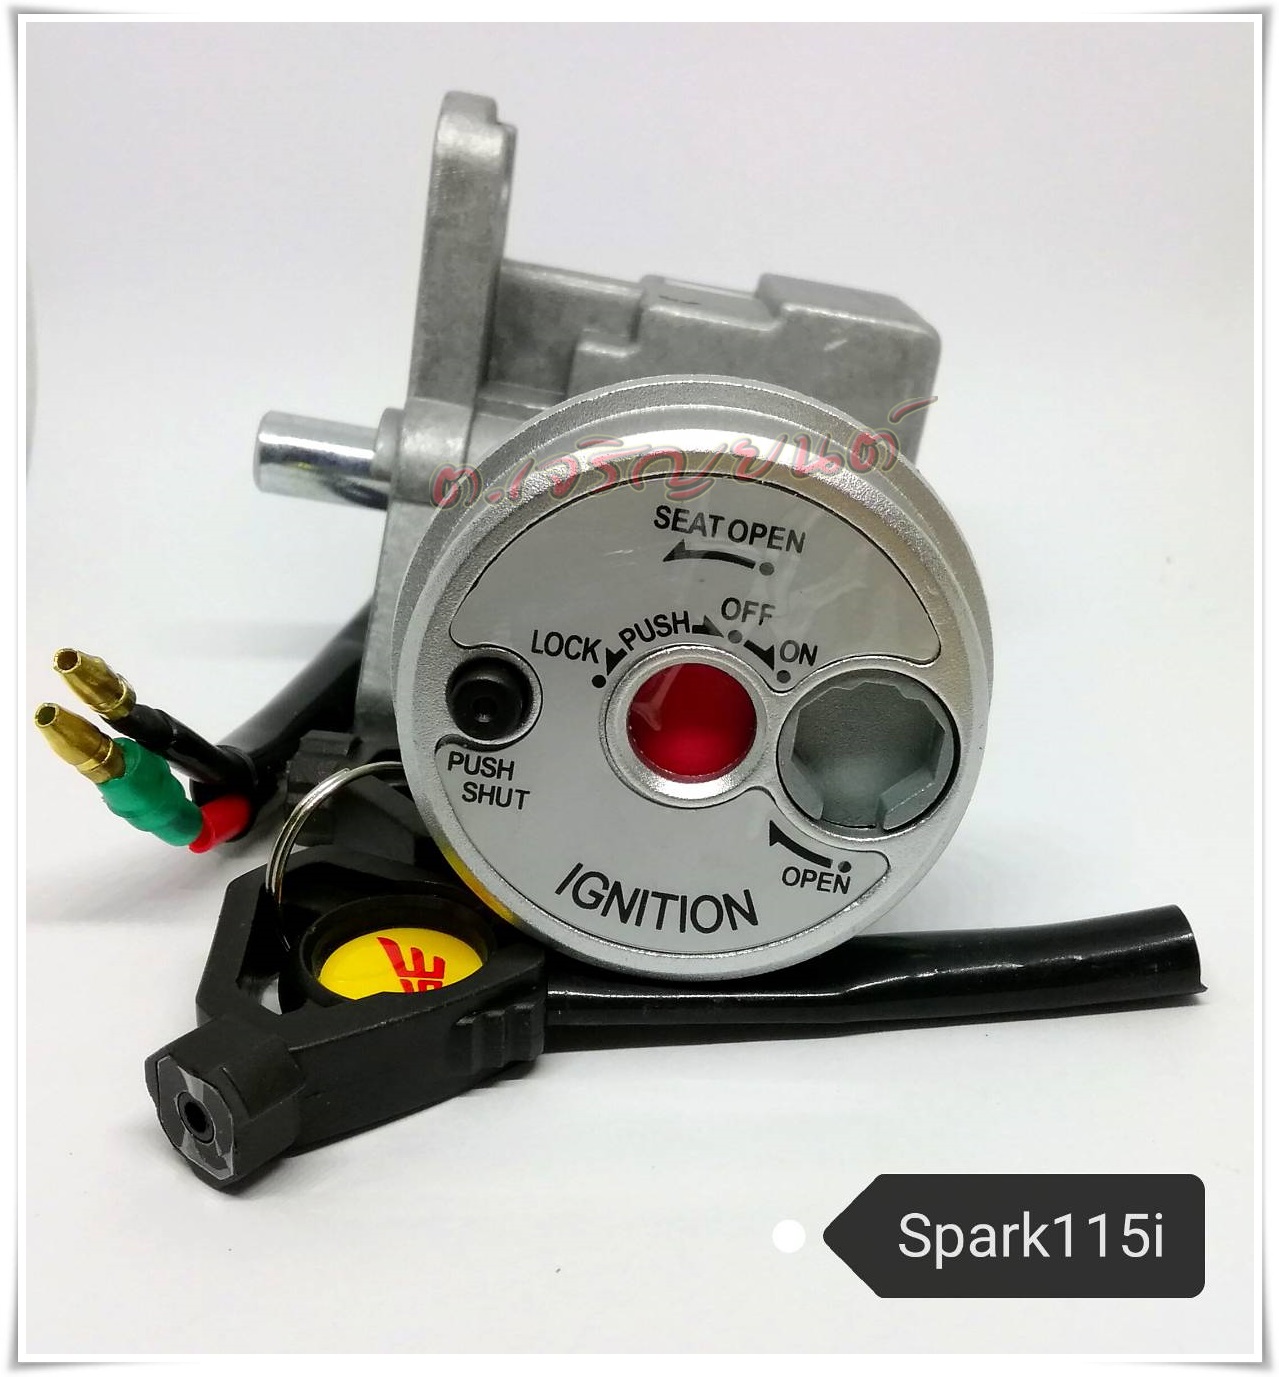 สวิทช์กุญแจ SPARK 115 I (สปาร์ค115ไอ)เกรดเทียบเท่าแท้